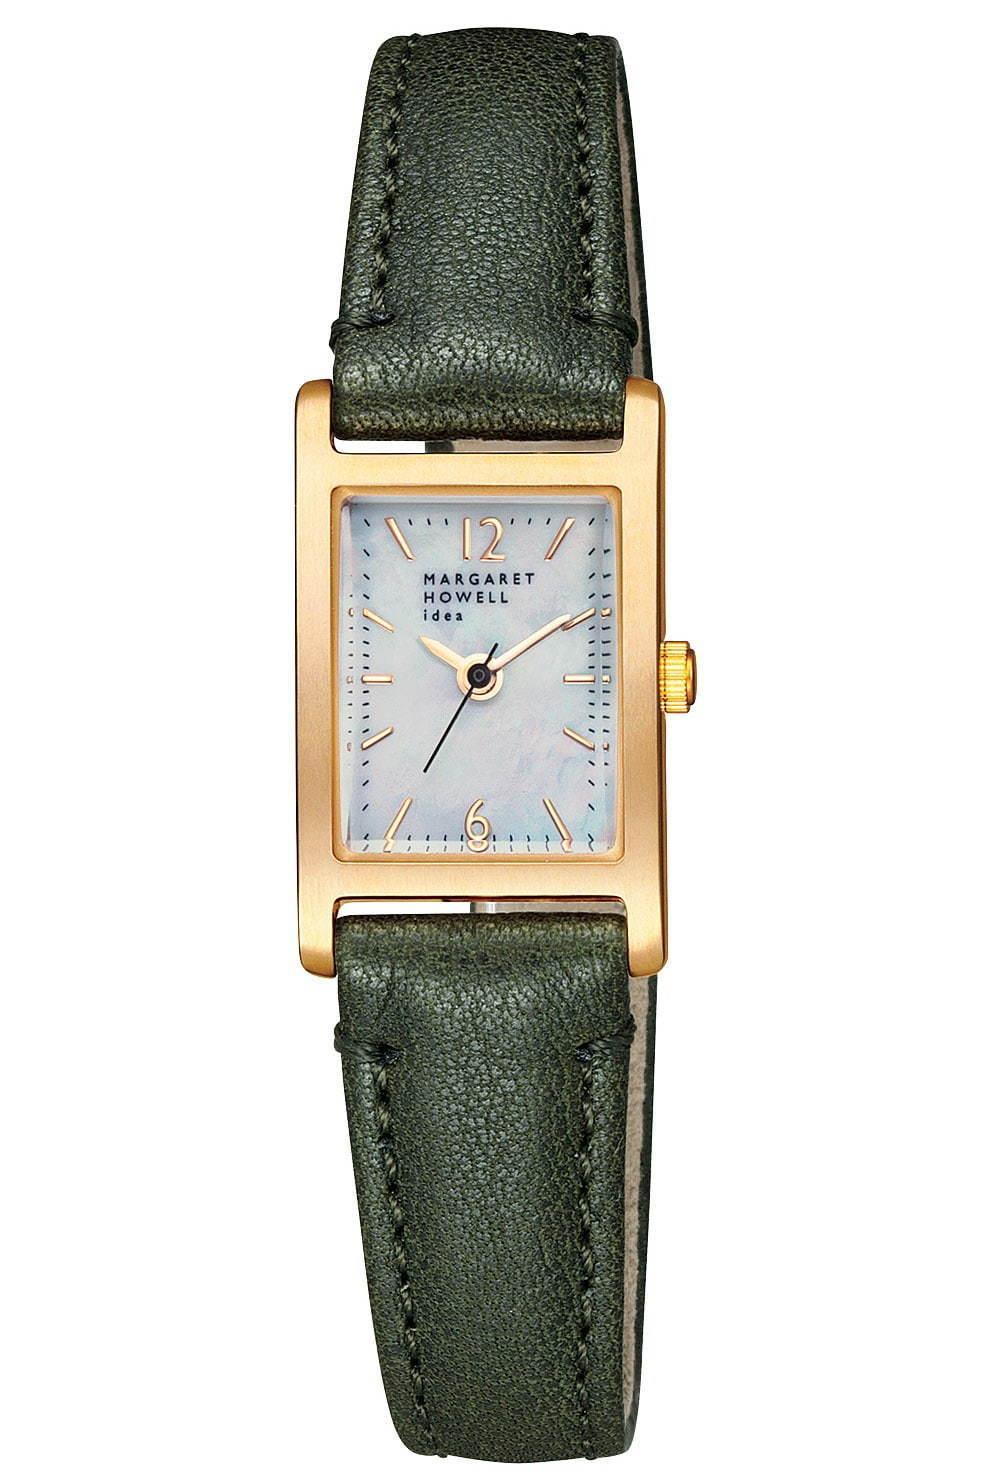 マーガレット・ハウエル アイデアの新作腕時計、25周年記念で初期モデルのデザインを復刻 コピー